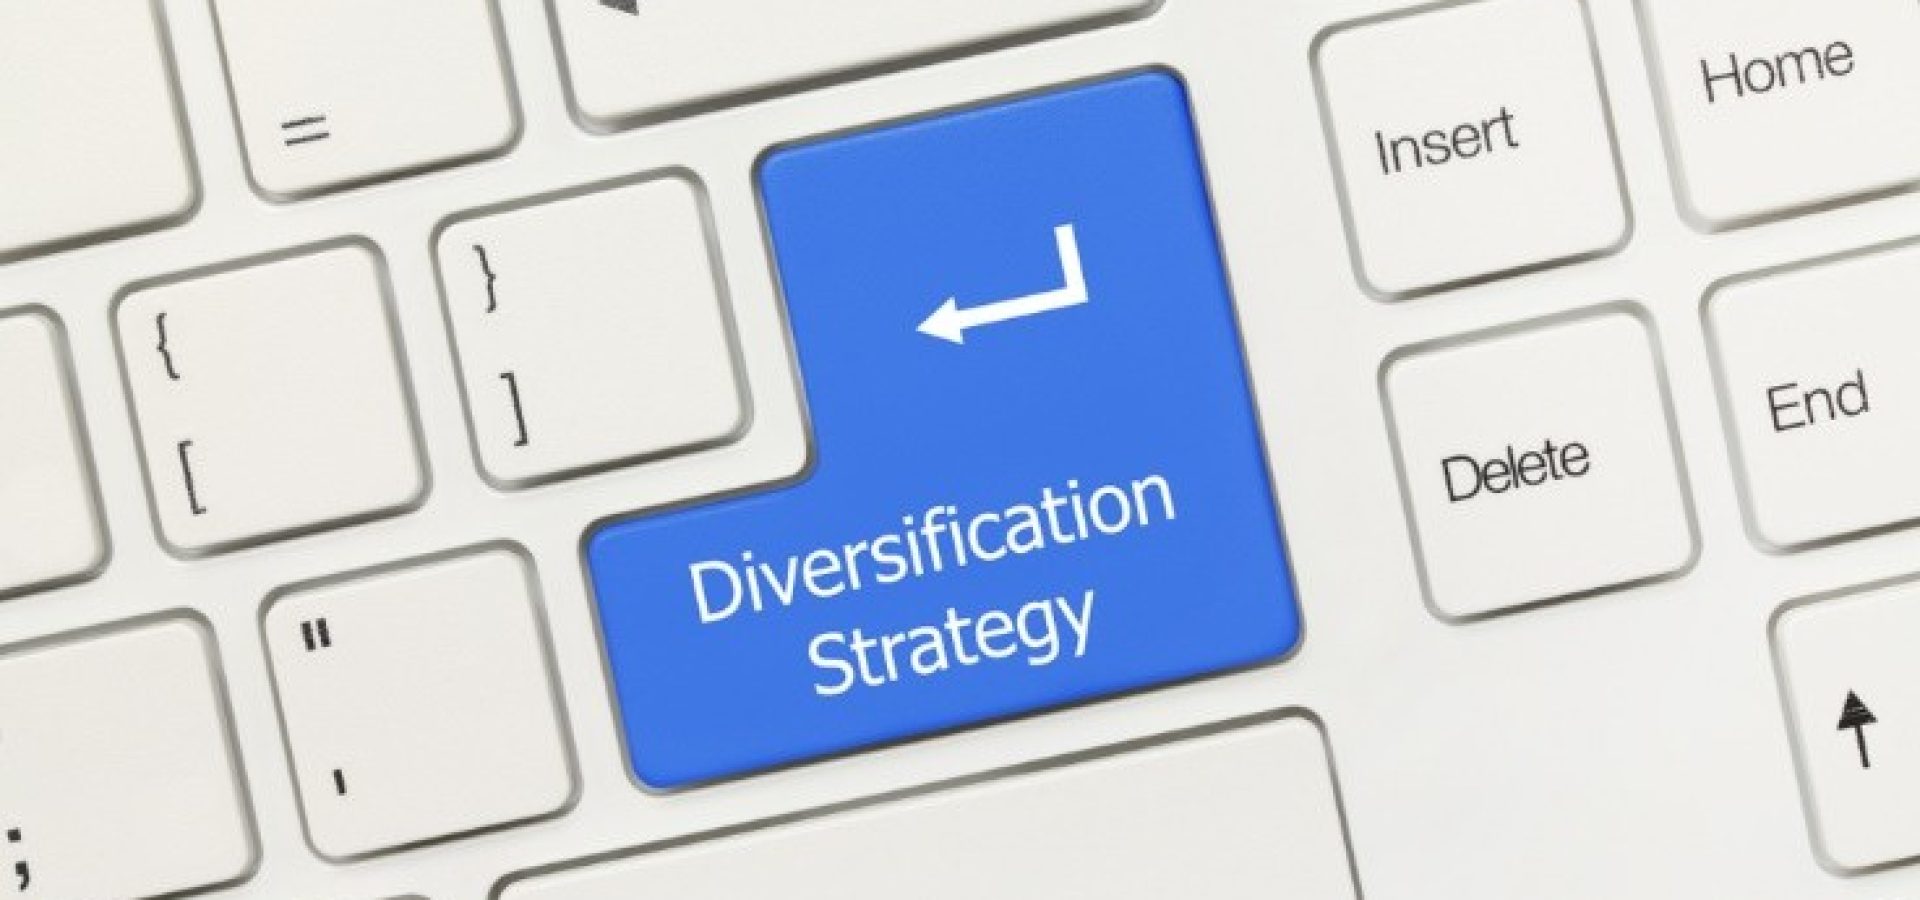 diversification strategy written on keyboard – wibestbroker